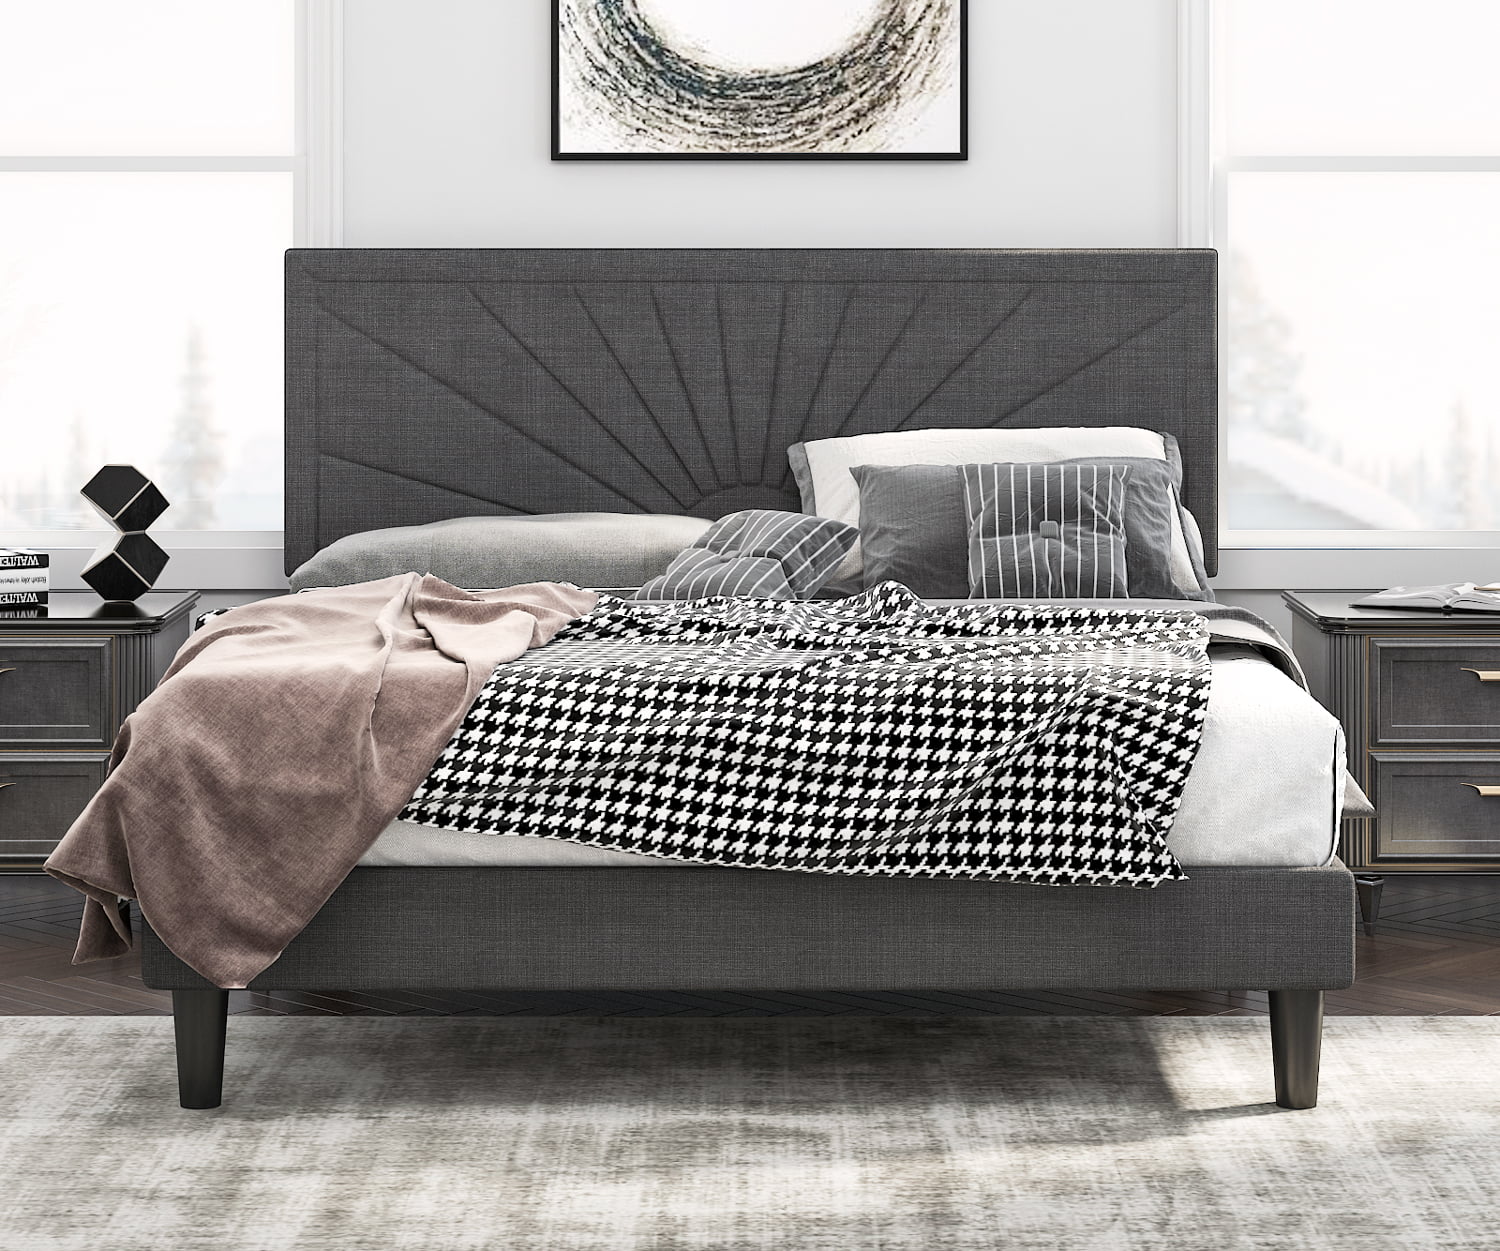 Upholstered Platform Bed Frame, Grey Full Size Headboard